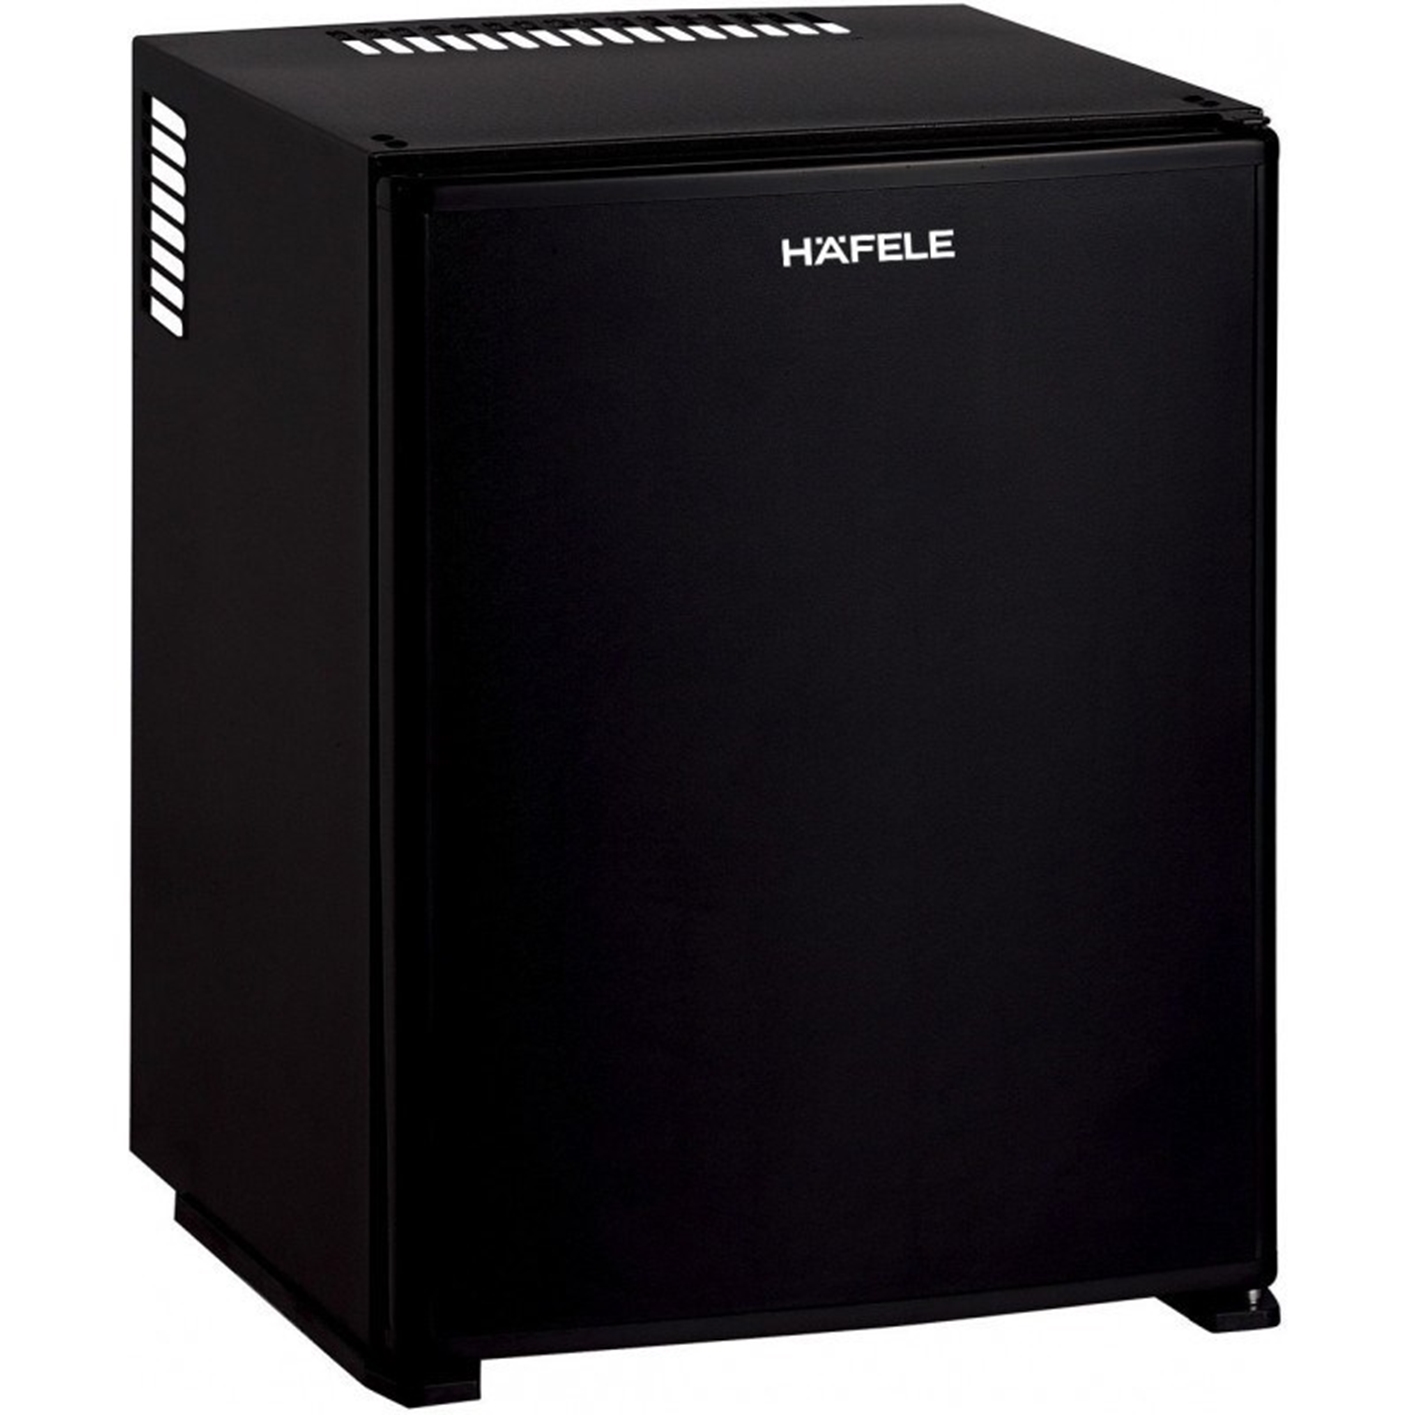 Hình ảnh của Tủ lạnh mini Hafele HF-M30S 536.14.000